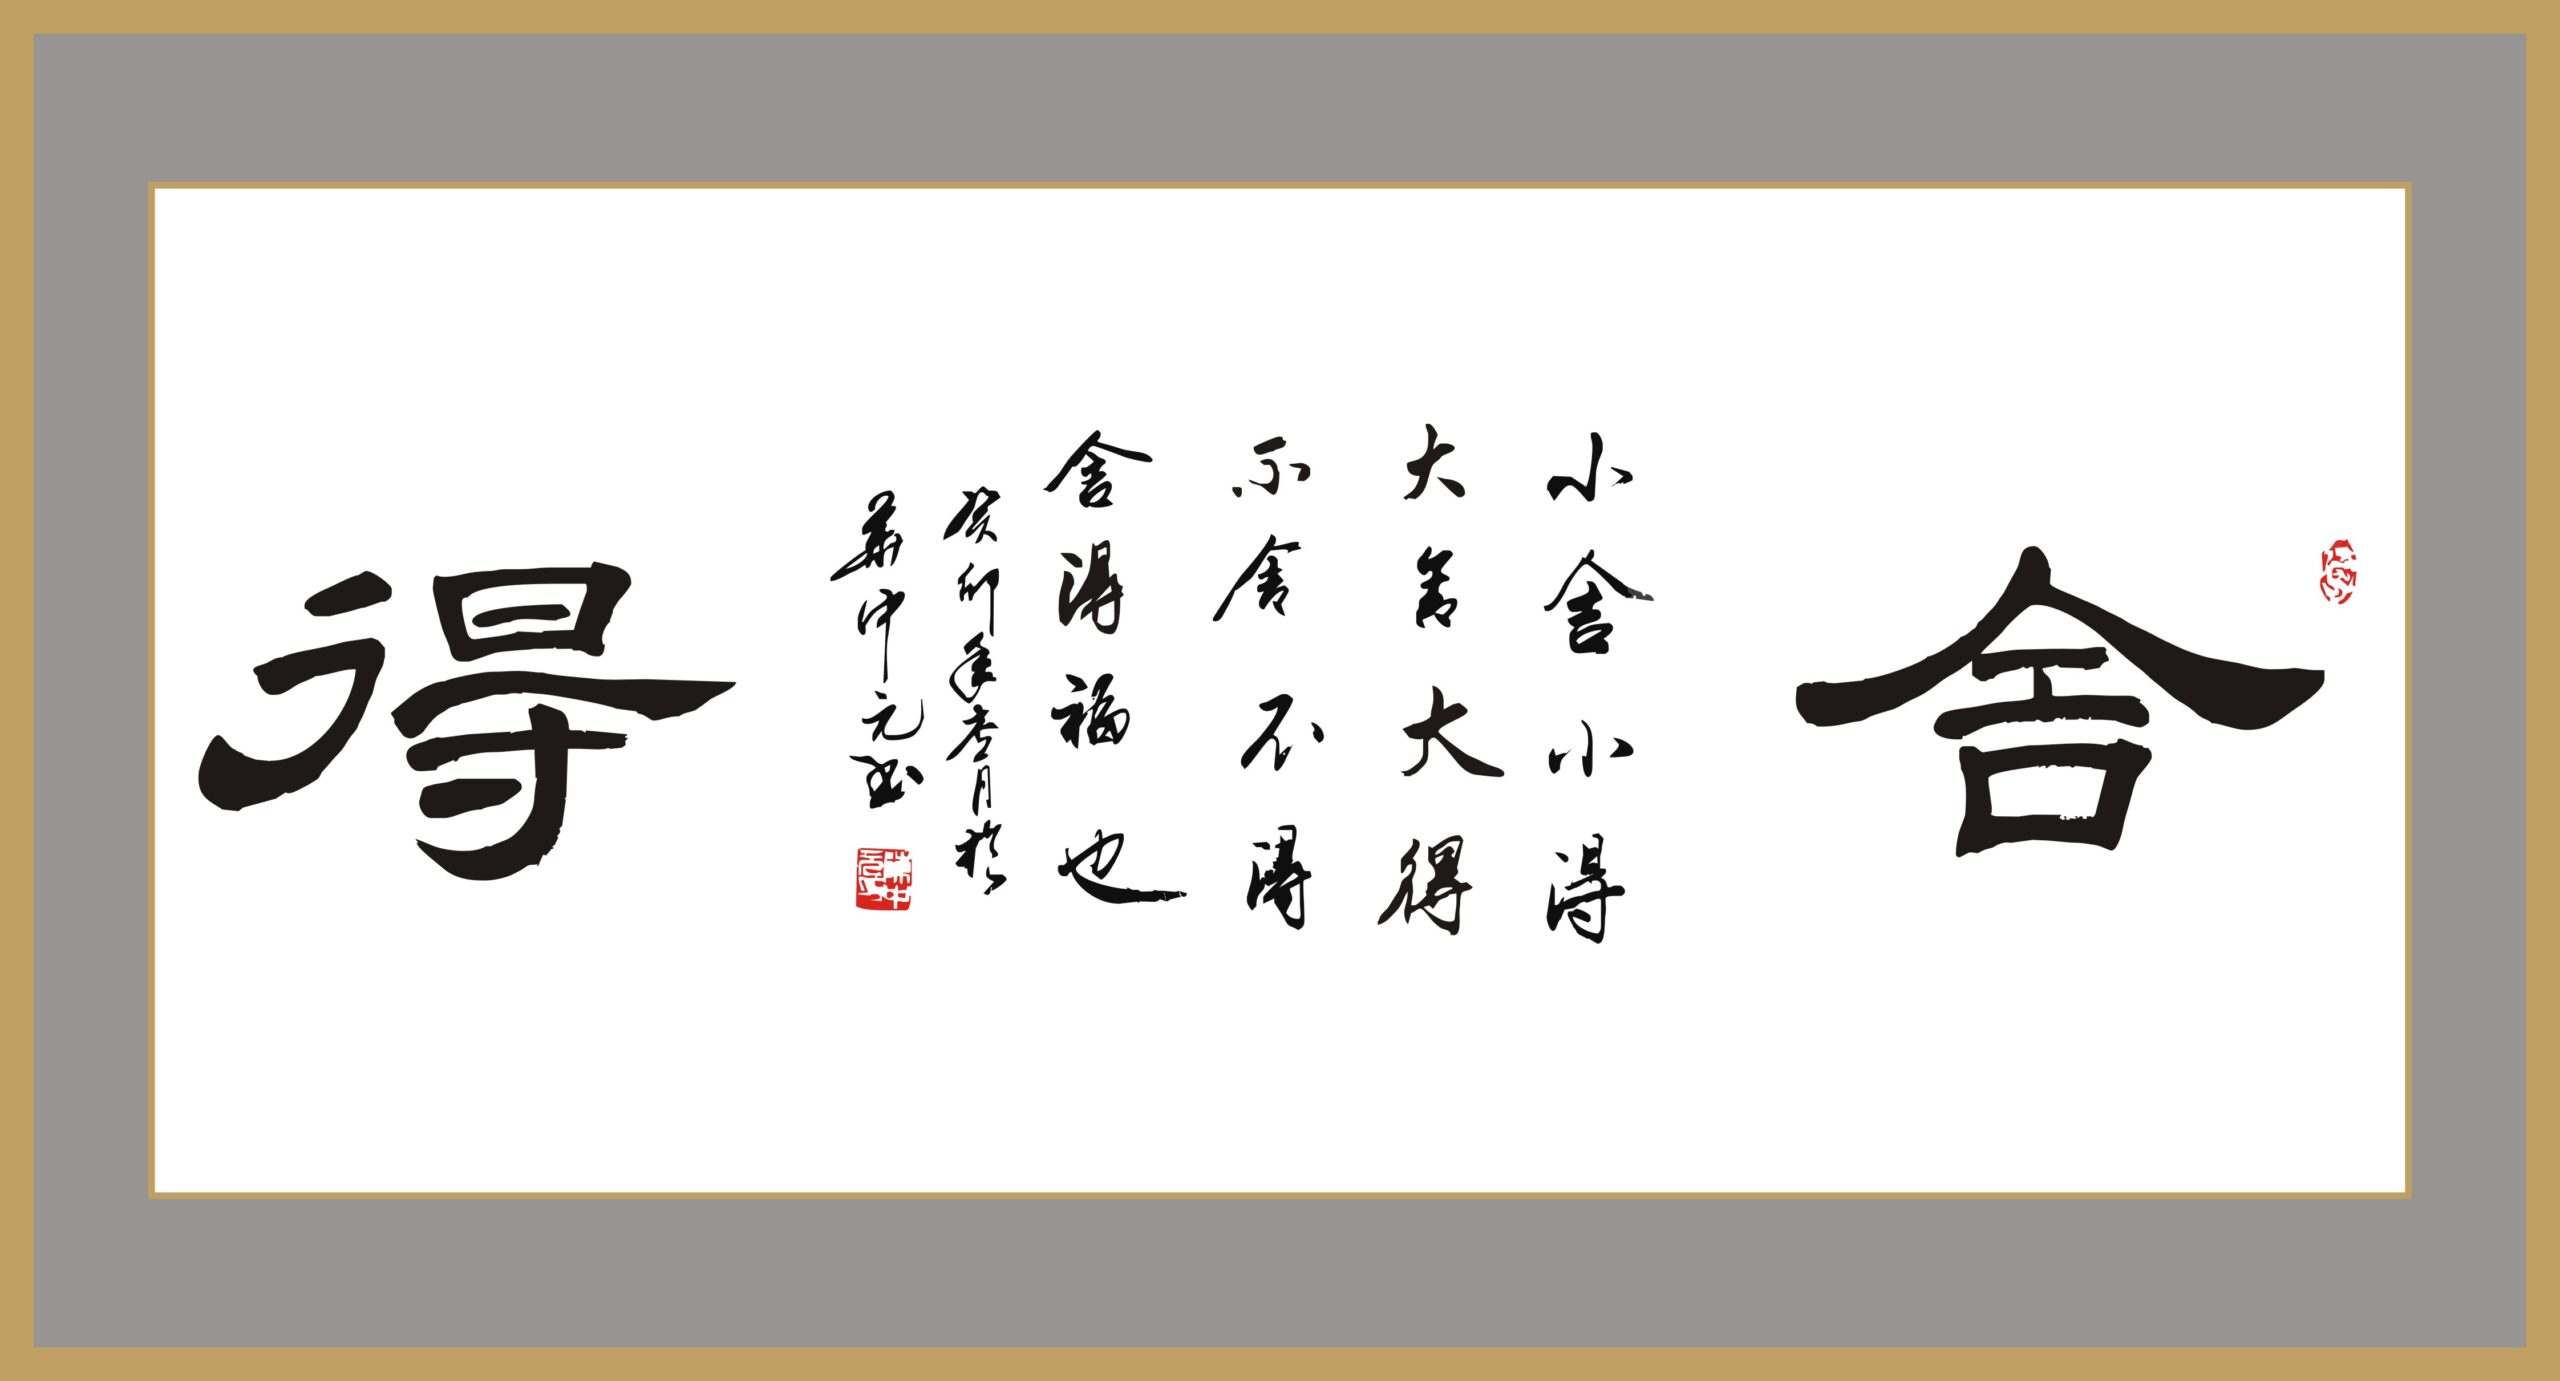 当代著名书法家陈中元先生被授予中国国礼艺术家